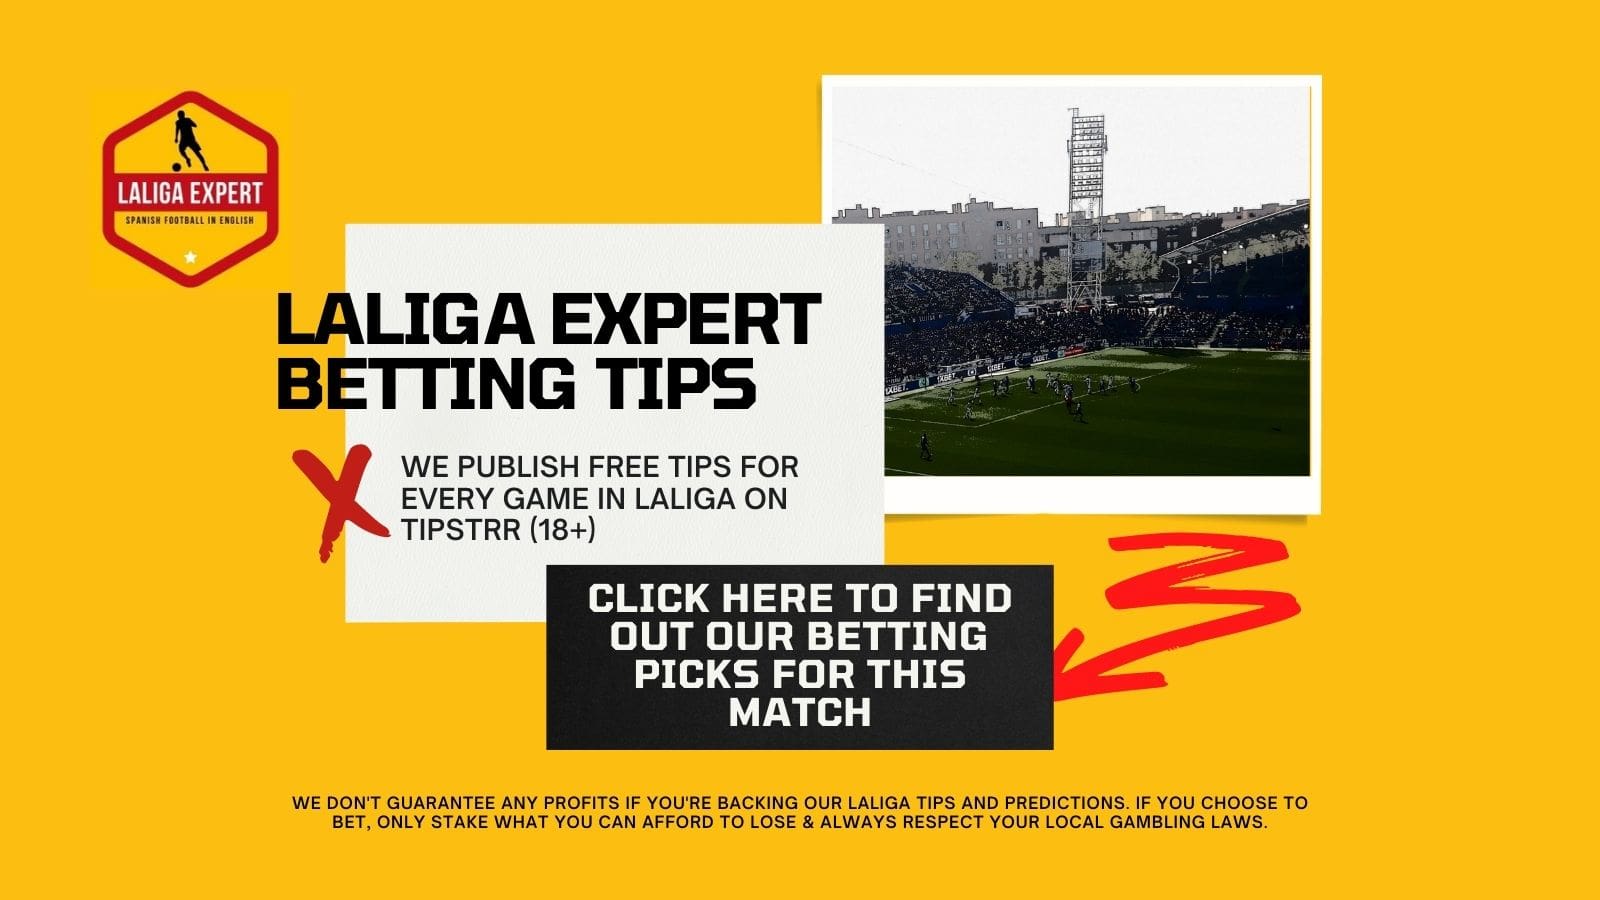 La Liga betting tips